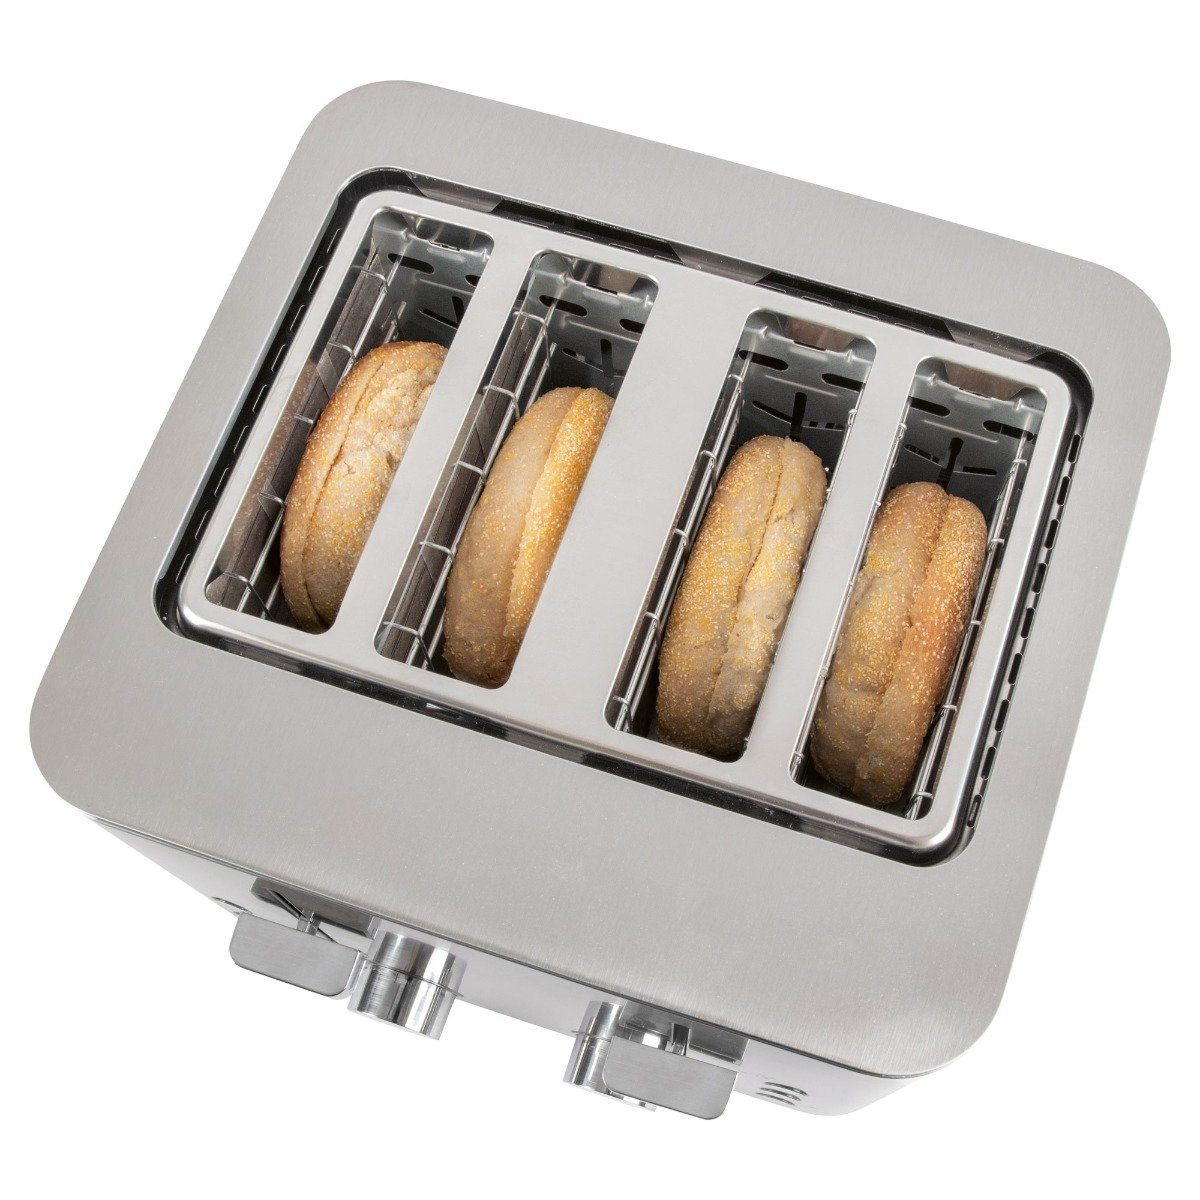 ProfiCook getrennte 4 Toaster 1252, Toaster Scheiben, 2 Bedienelemente PC-TA